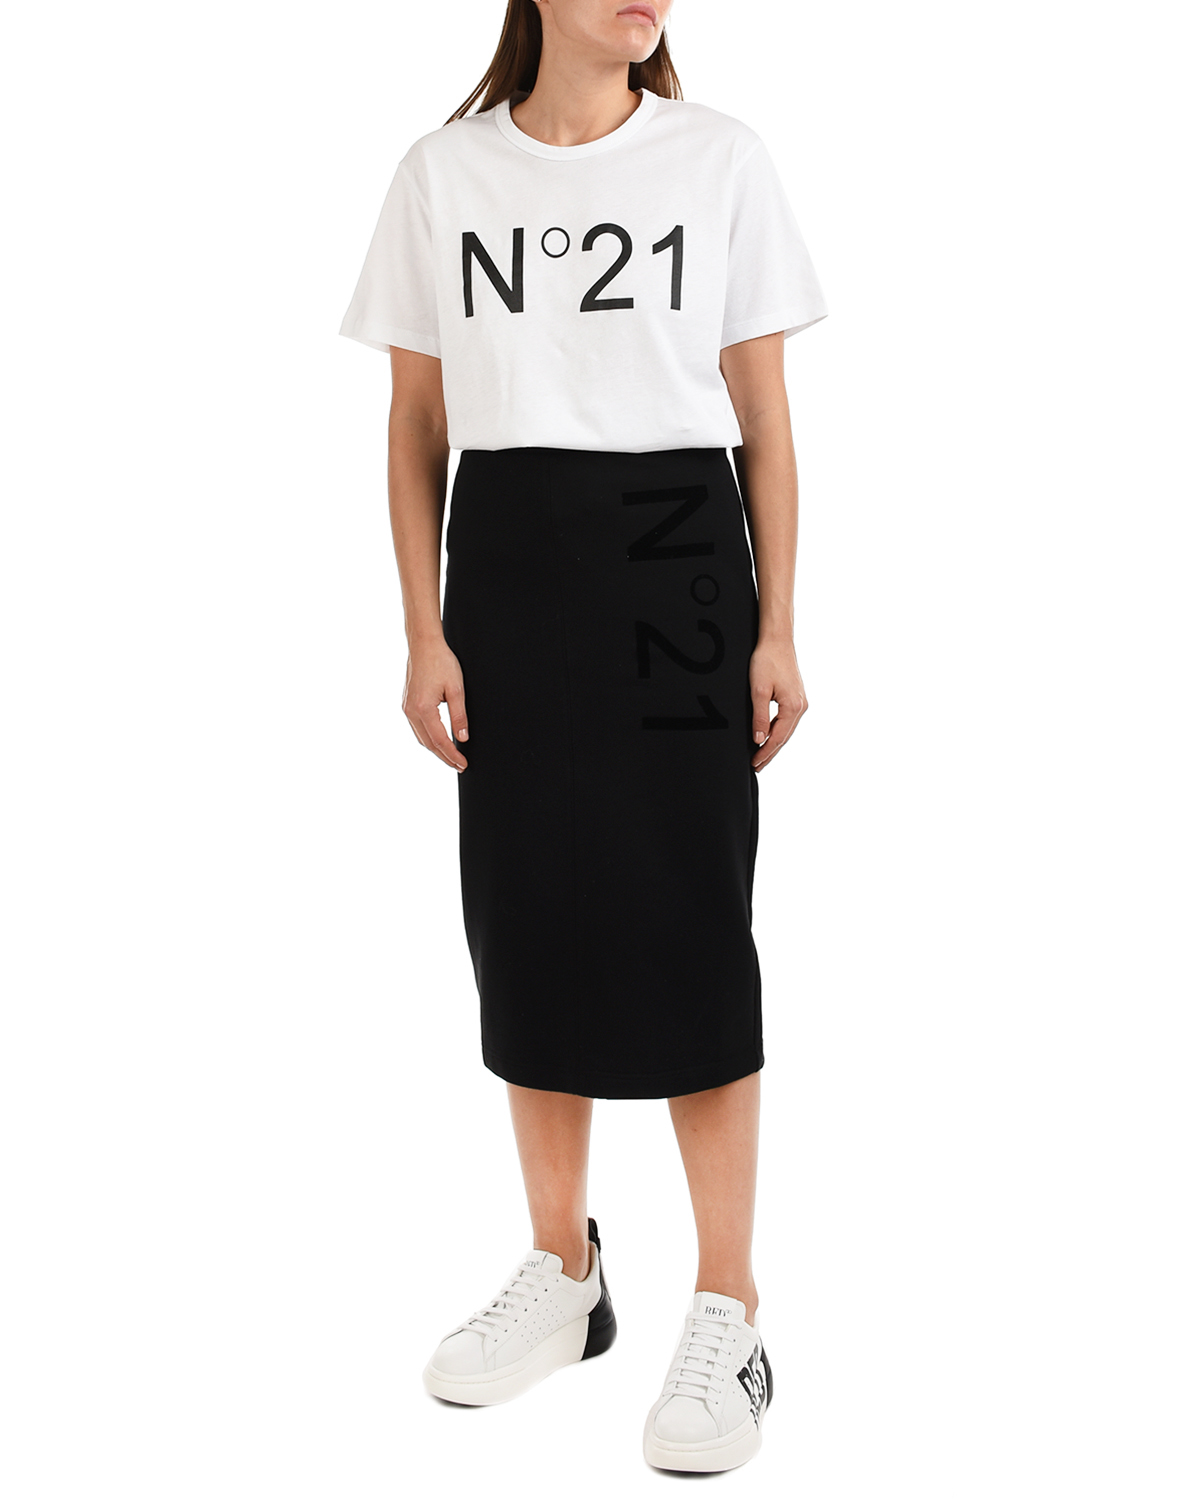 Белая футболка oversize c логотипом No. 21, размер 40, цвет белый - фото 2